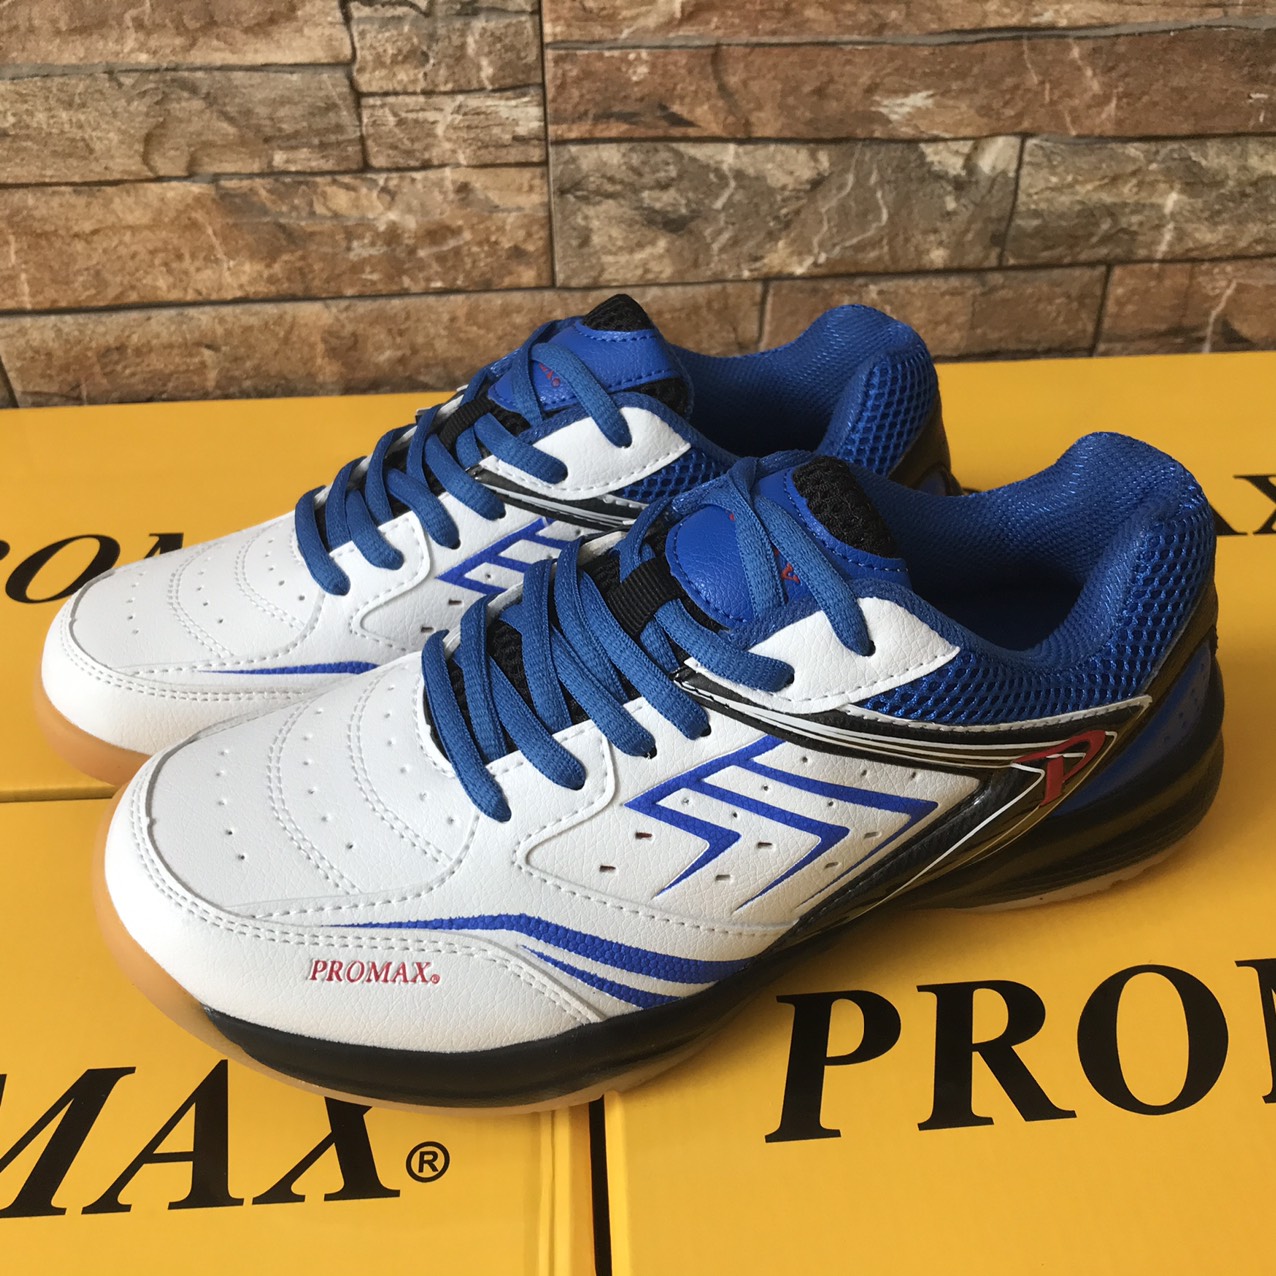 [MẪU MỚI] Giày promax PR19003 cao cấp thích hợp cho nam và nữ chơi thể thao bóng chuyền, cầu lông, bóng bàn, màu trắng xanh